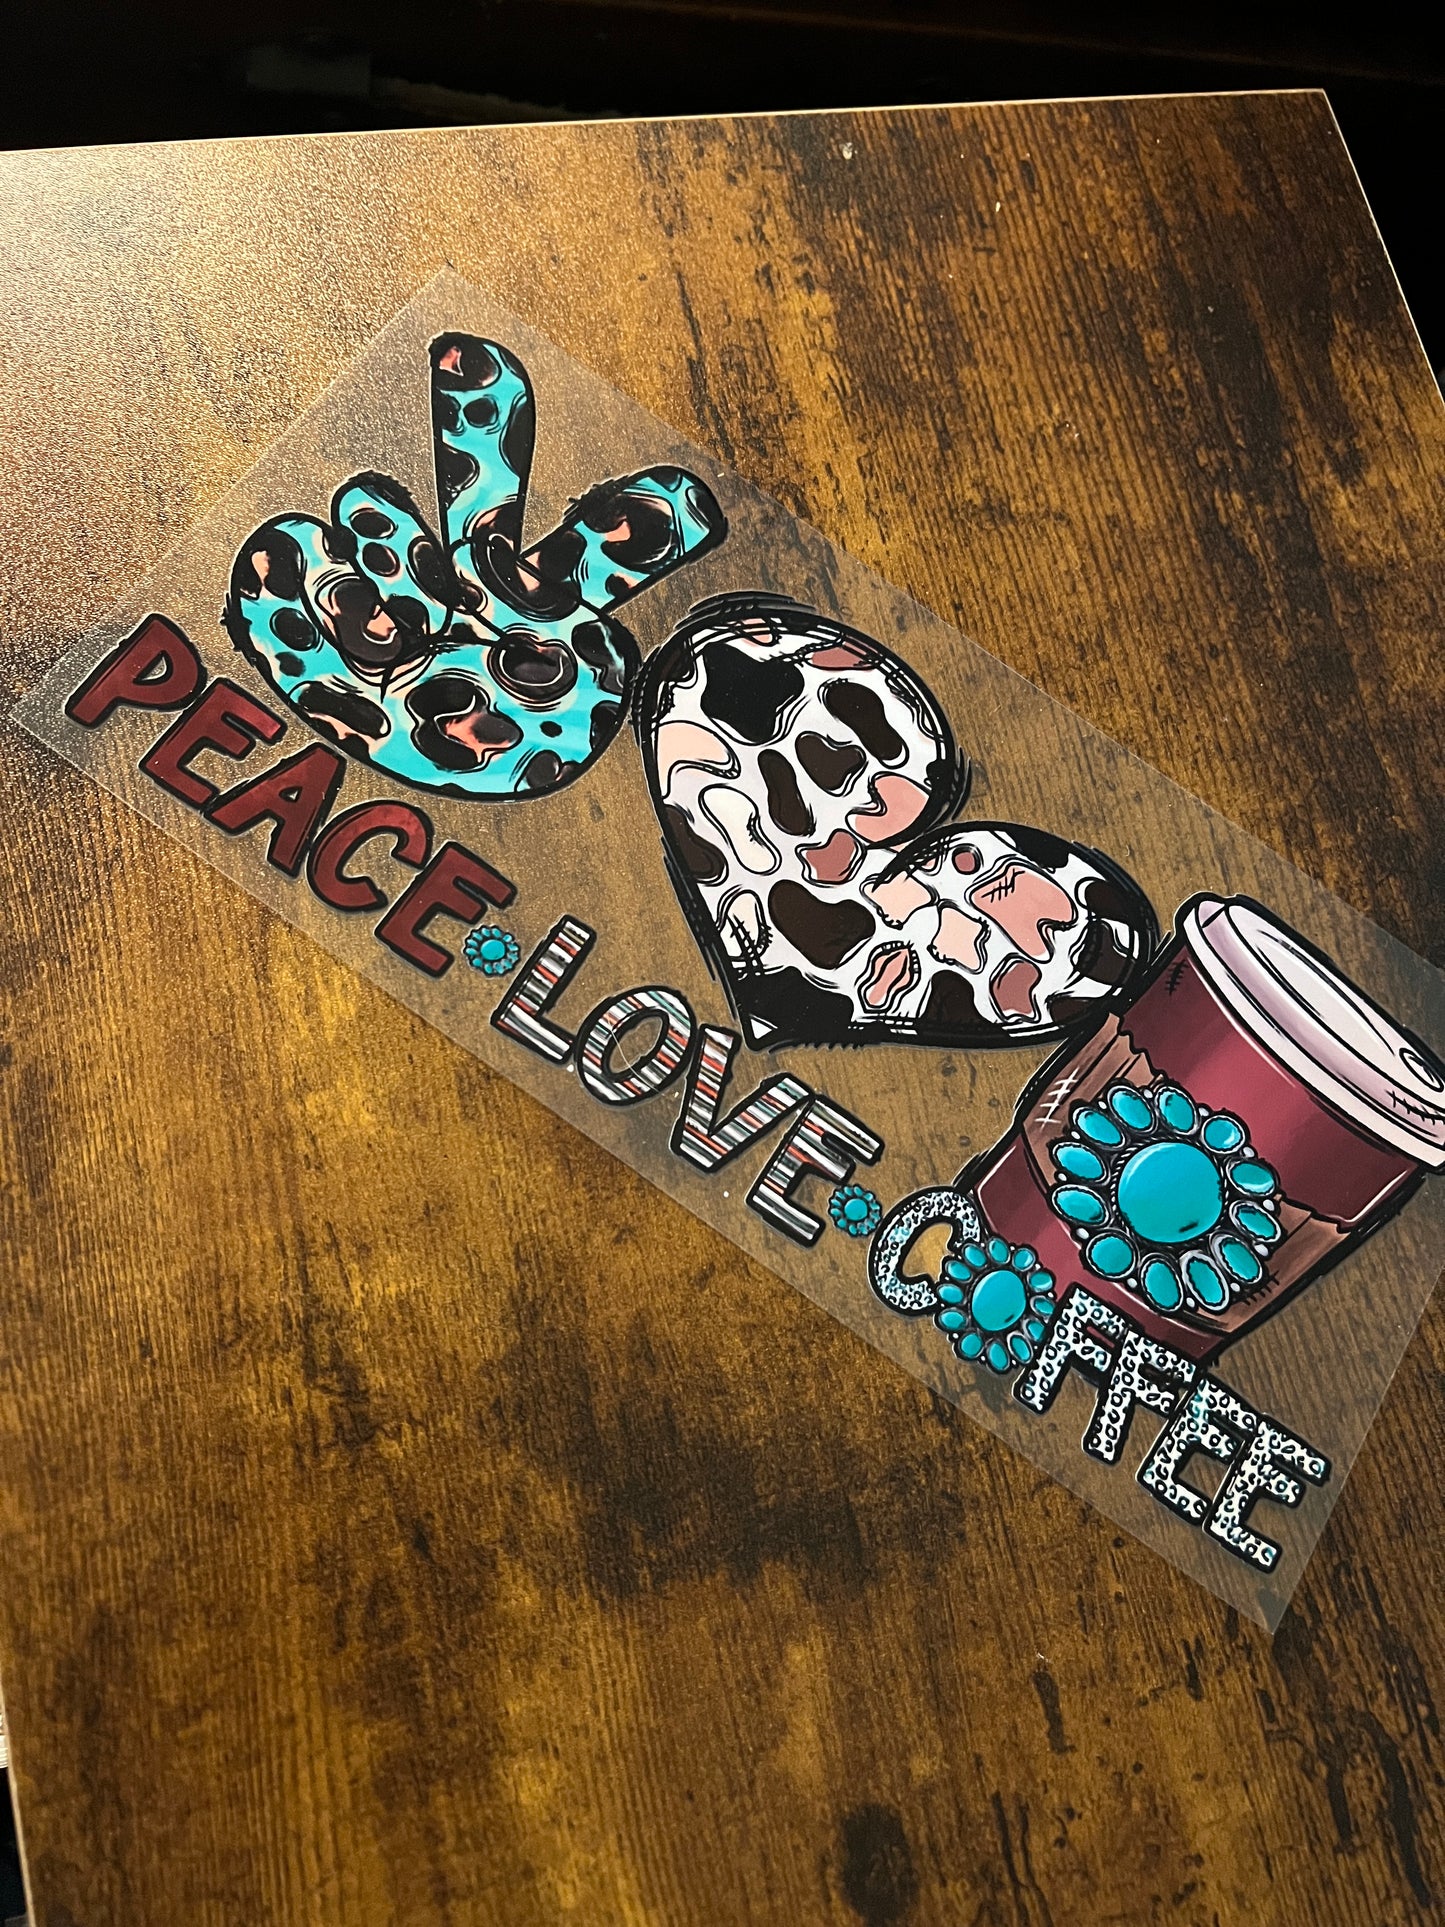 Peace Love Coffee